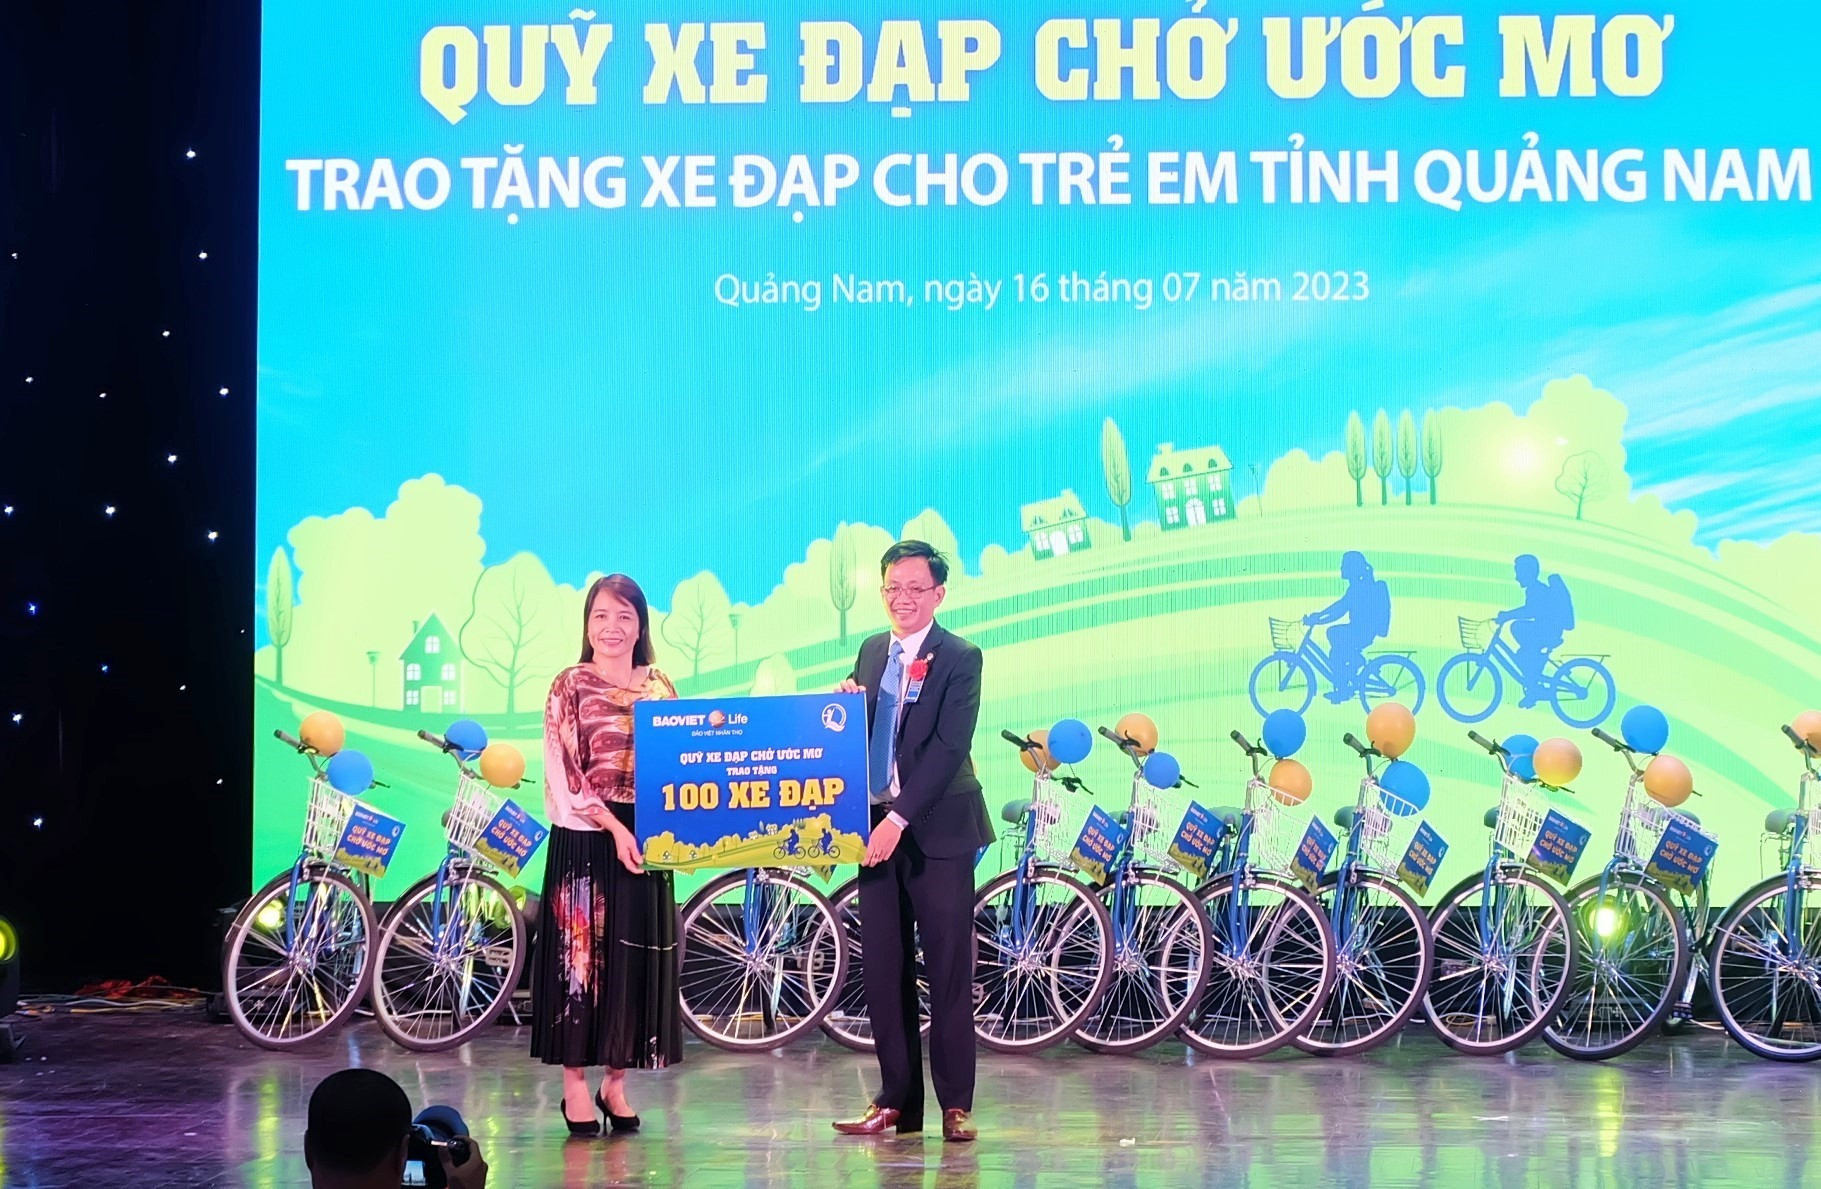 Thông qua Quỹ Bảo trợ trẻ em Việt Nam, Bảo Việt nhân thọ trao tặng 100 xe đạp cho học sinh khó khăn trên địa bàn tỉnh Quảng Nam. Ảnh: M.L